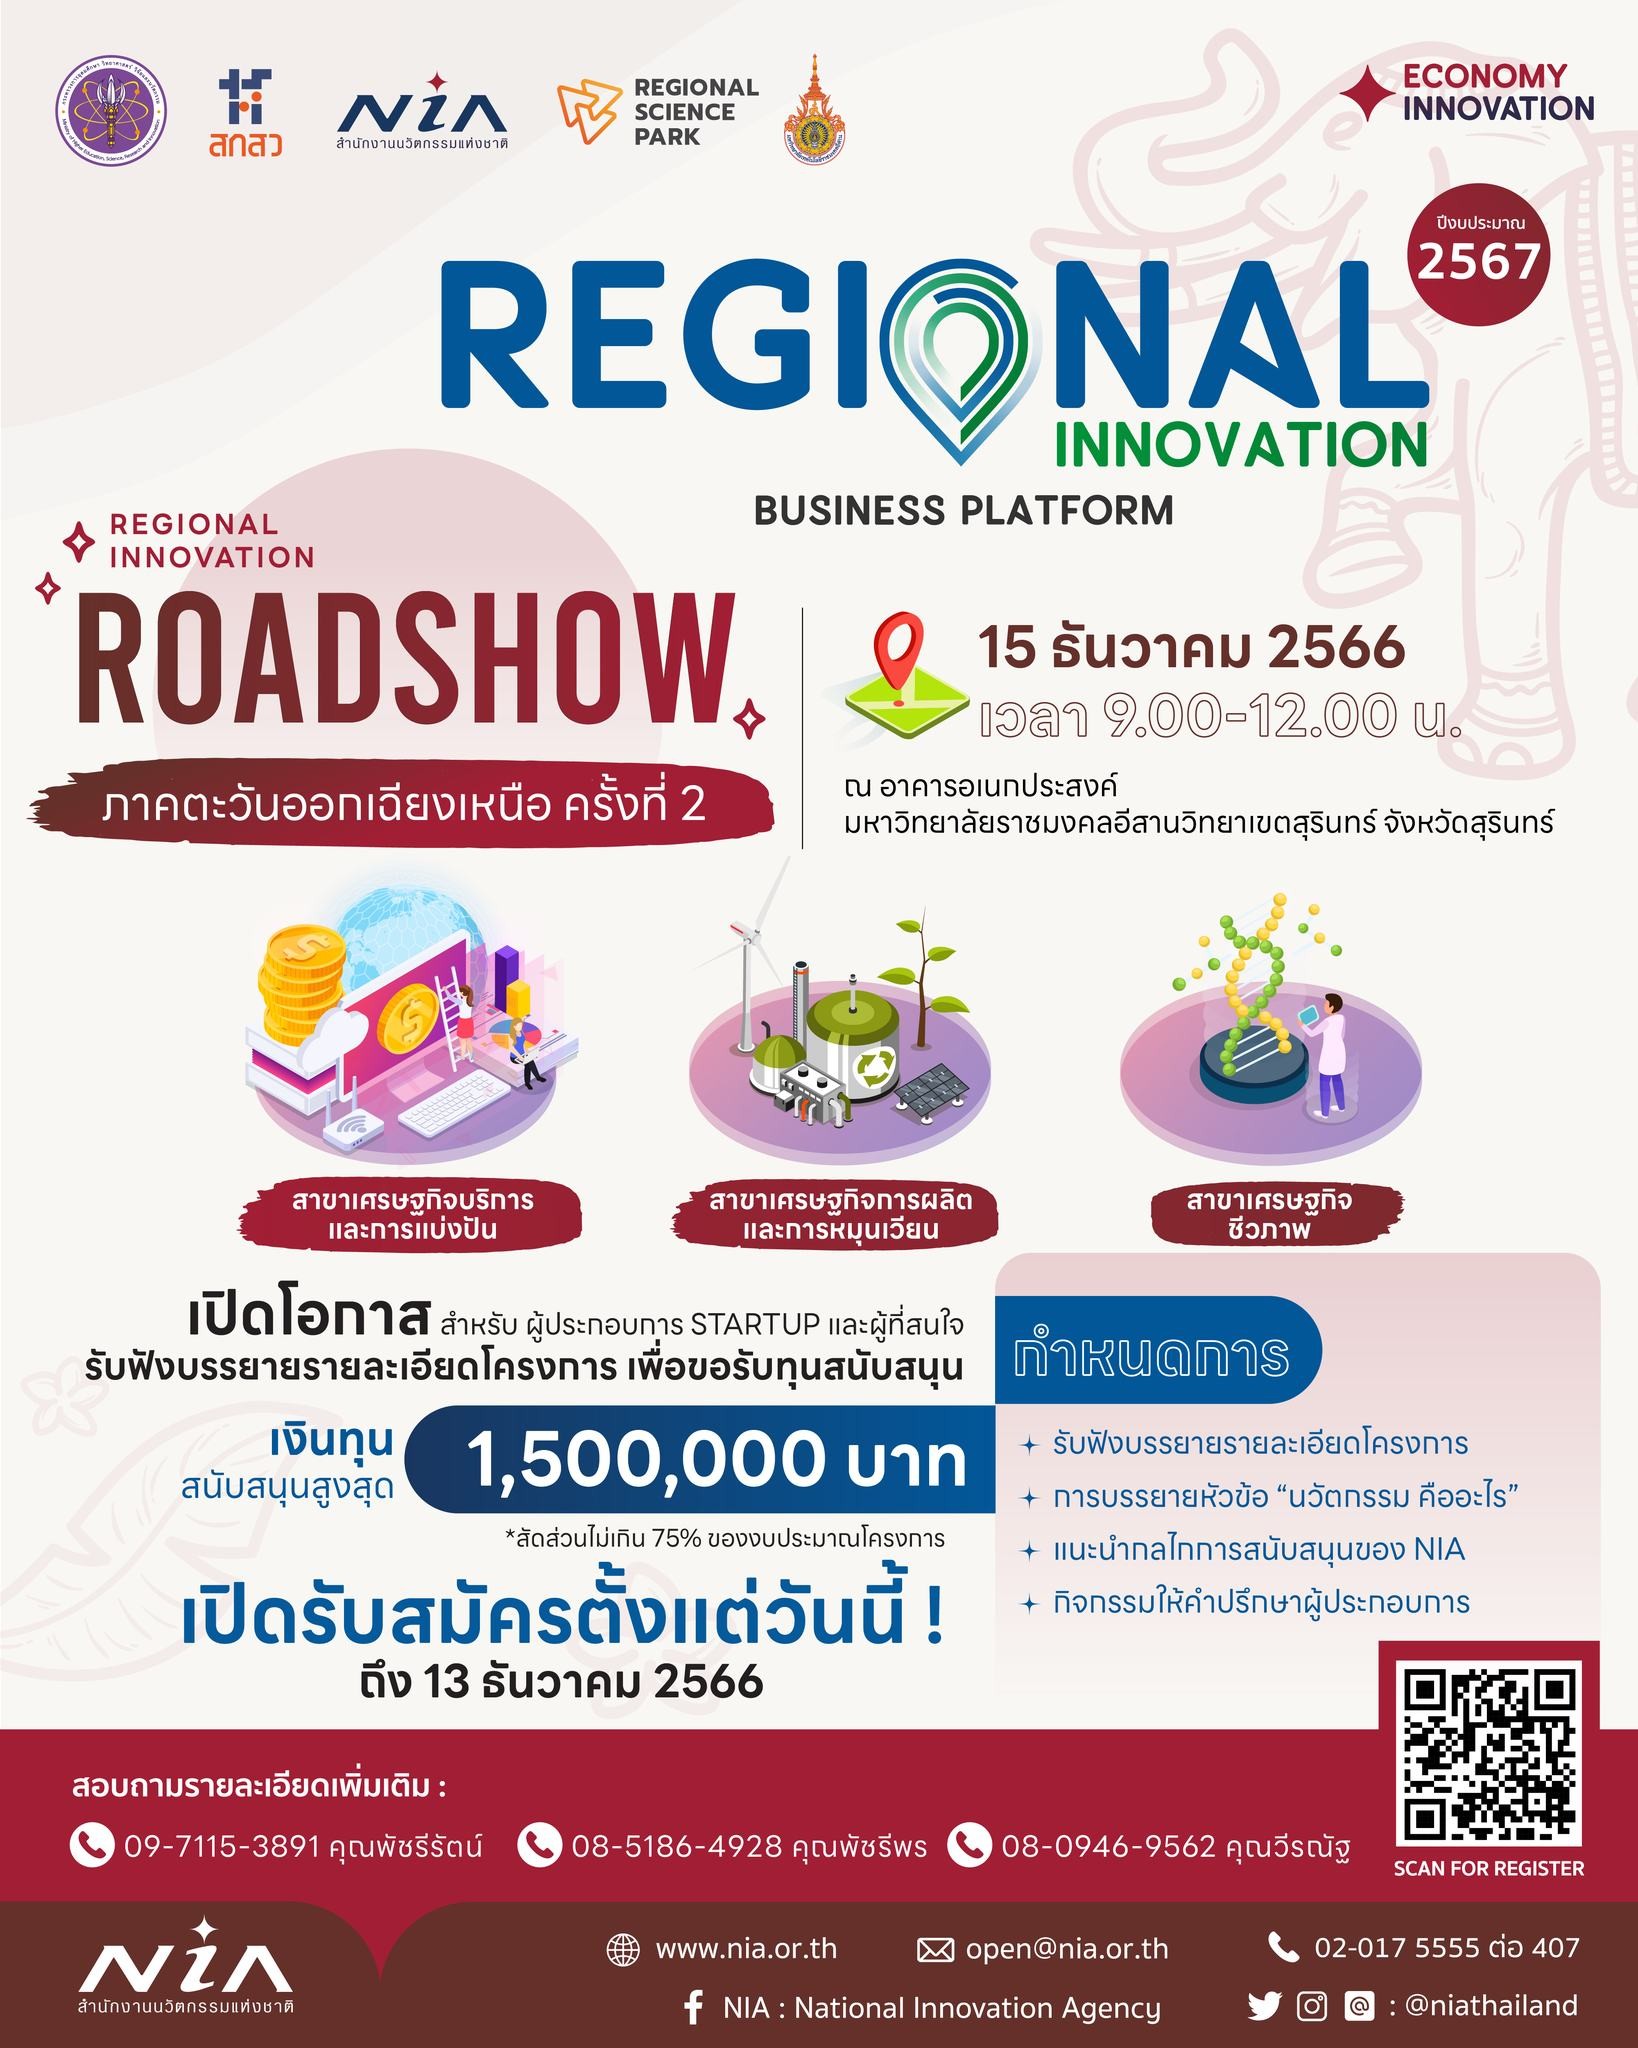 ขอเรียนเชิญเข้าร่วมกิจกรรม “Regional Innovation Roadshow” ภาคตะวันออกเฉียงเหนือ ครั้งที่ 2 ประจำปีงบประมาณ 2567